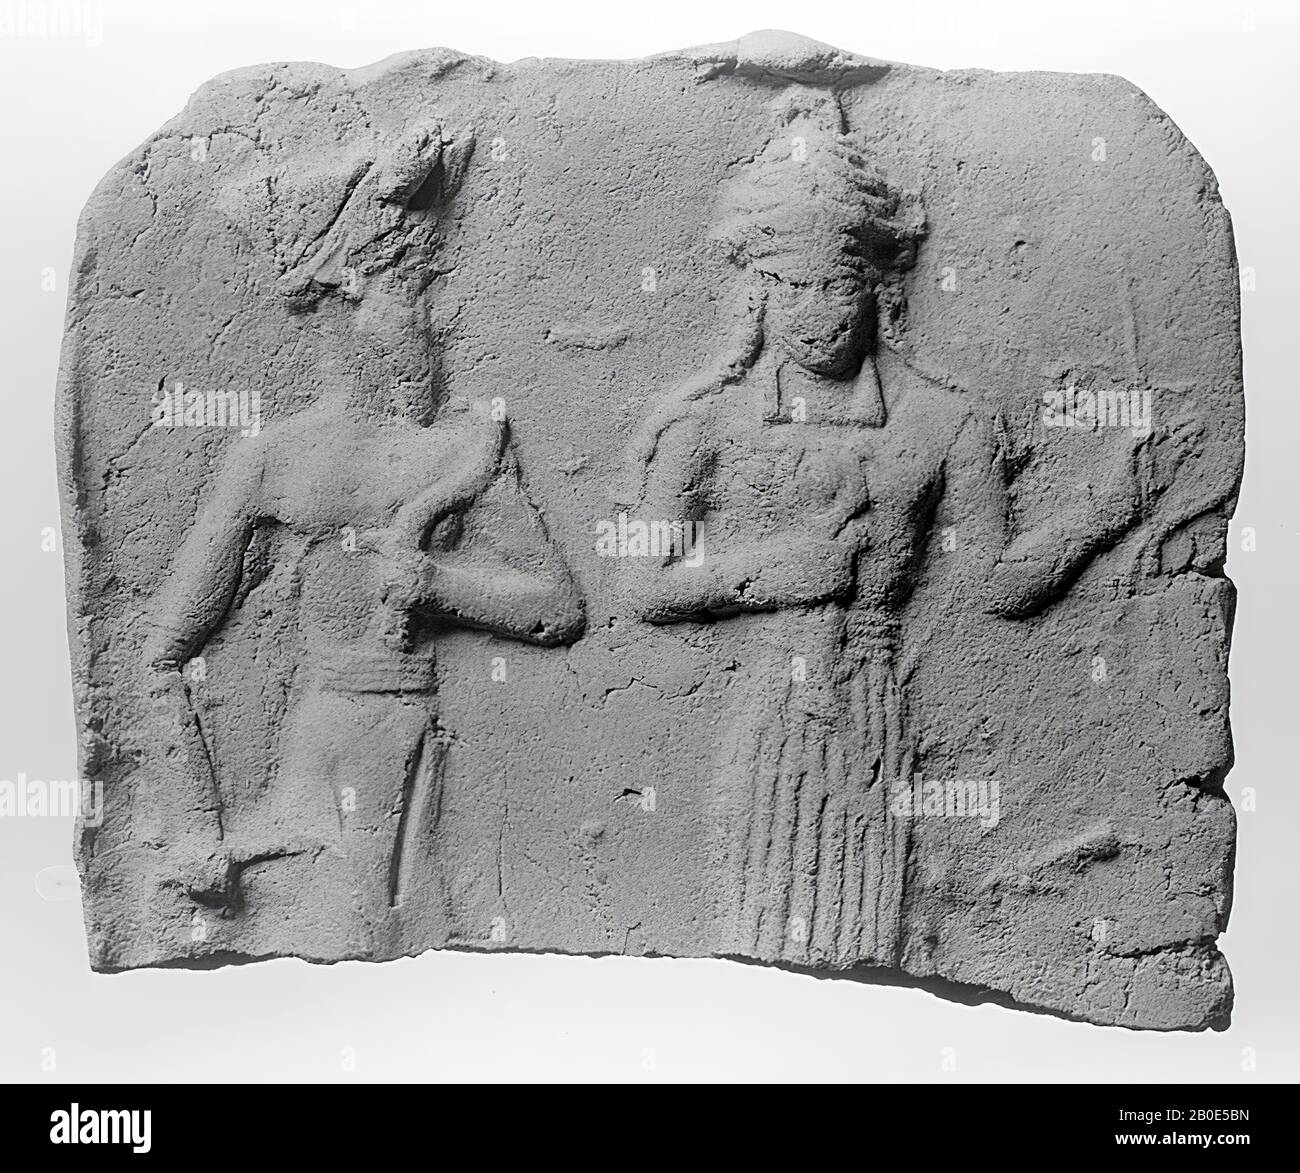 Una placa hecha en un molde. Muestra a un devoto que es tomado a mano por la diosa Ishtar o conducido al trono del dios supremo., placa ornamental, cerámica, arcilla, molde, L 5.4 cm, W 6.5 cm, Período babilónico antiguo 1830-1531 v. Chr., Irak Foto de stock